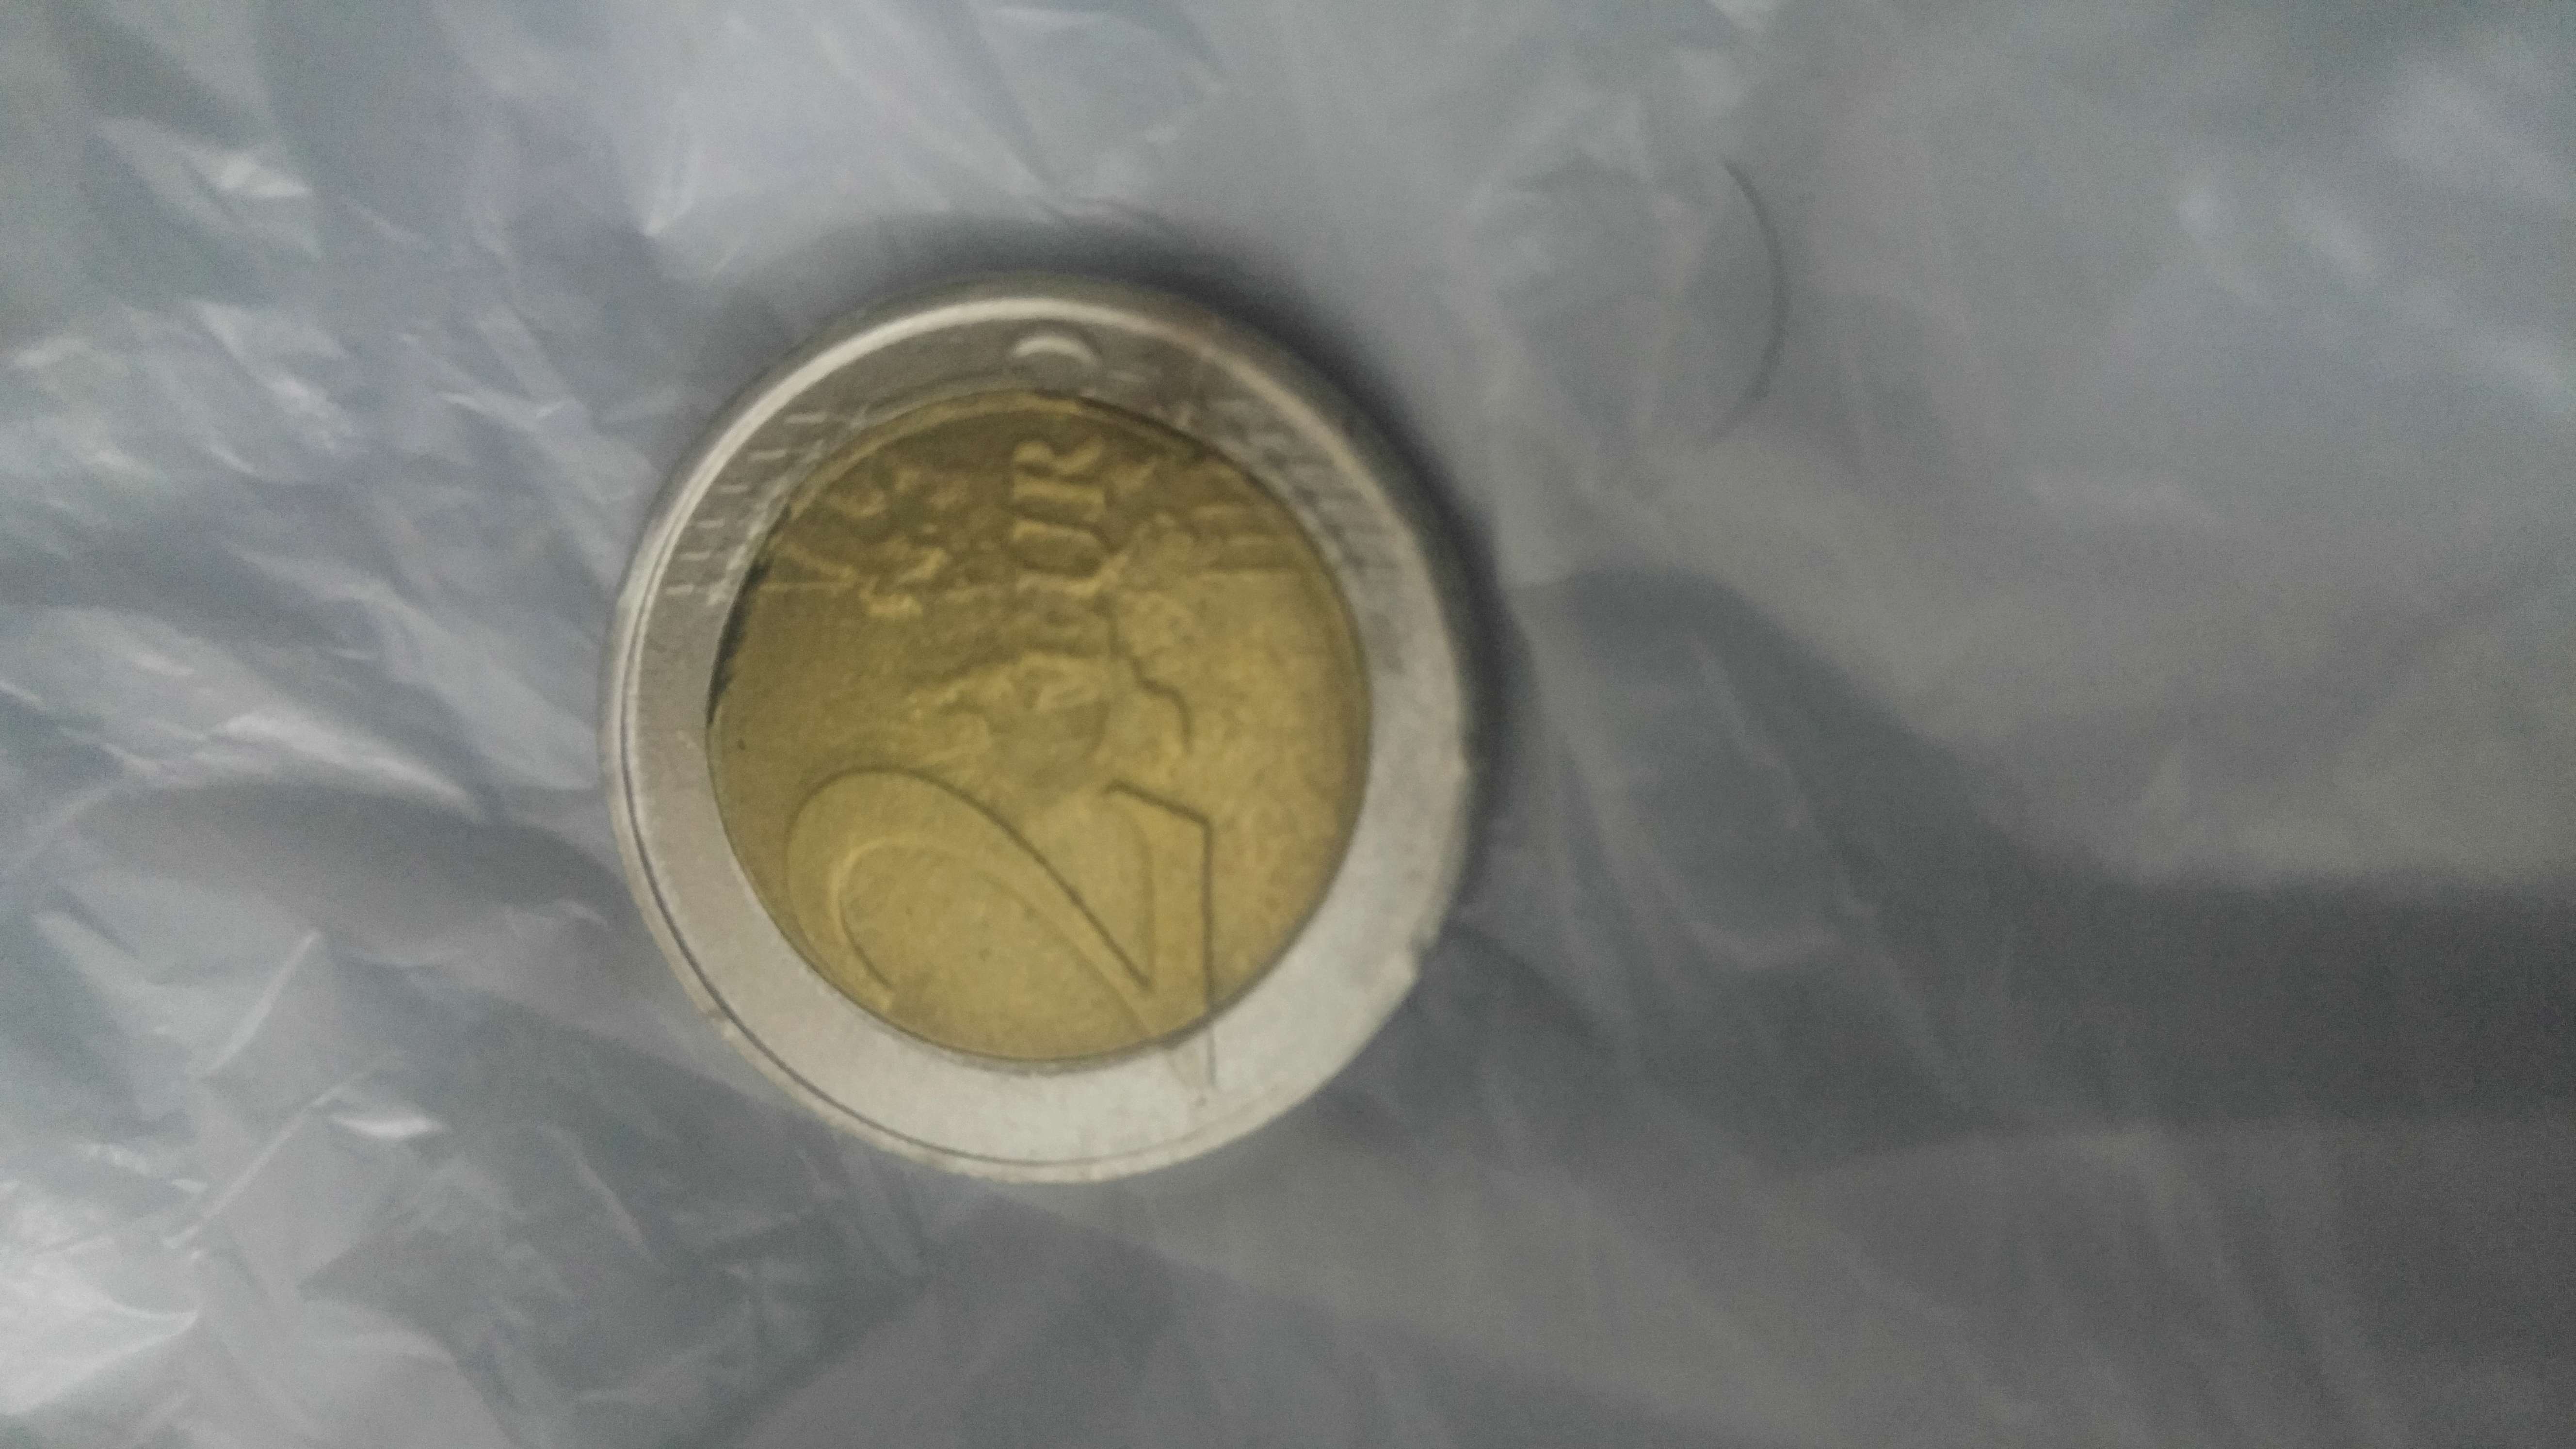 Moneda de euro totalmente dorada con la cara de Juan Carlos - Página 3 20180516